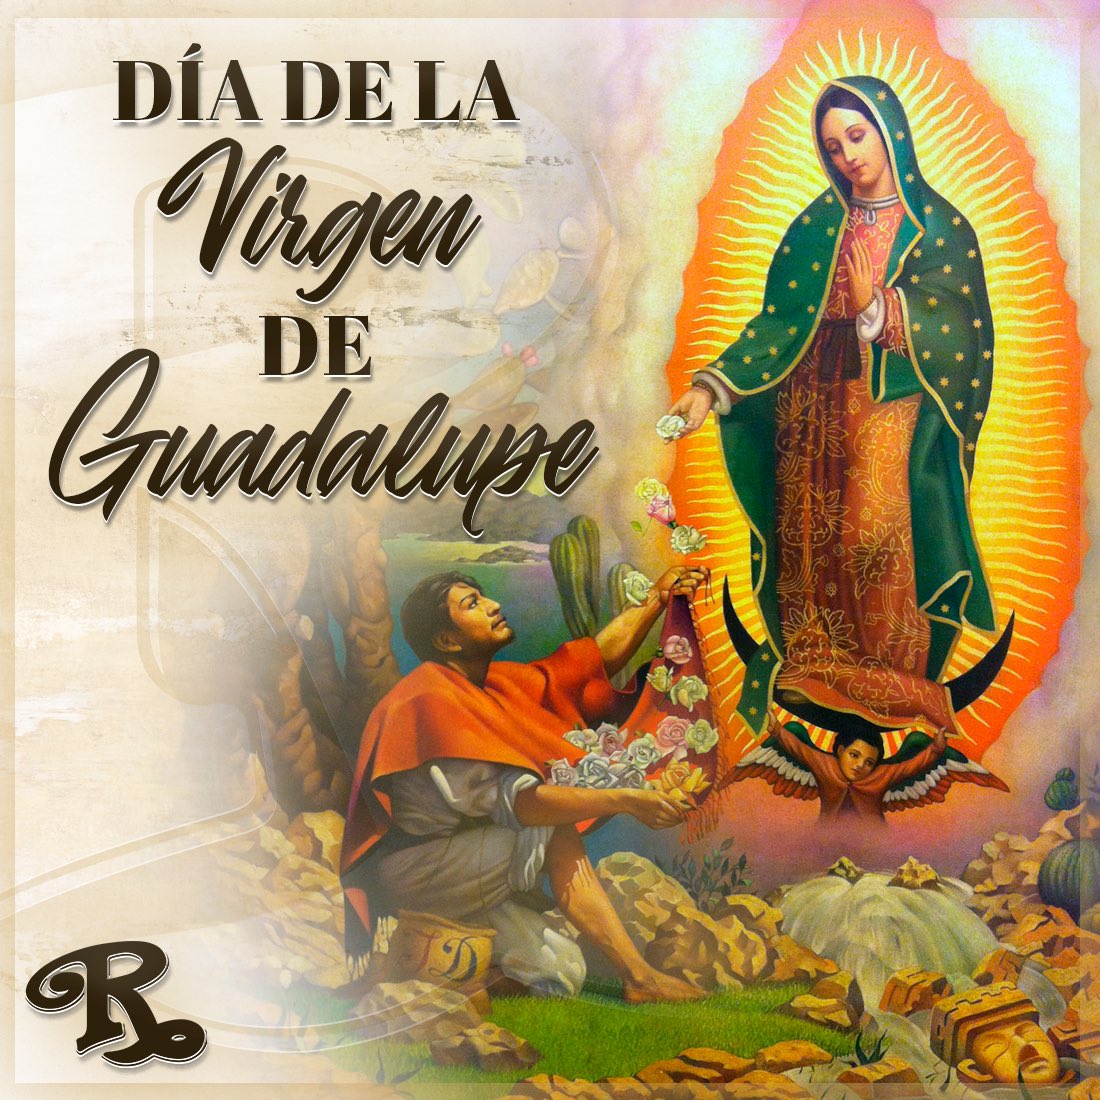 Hoy celebramos a nuestra morenita, La Virgen de Guadalupe. ¡Madre, cúbrenos siempre con tu manto! 💐